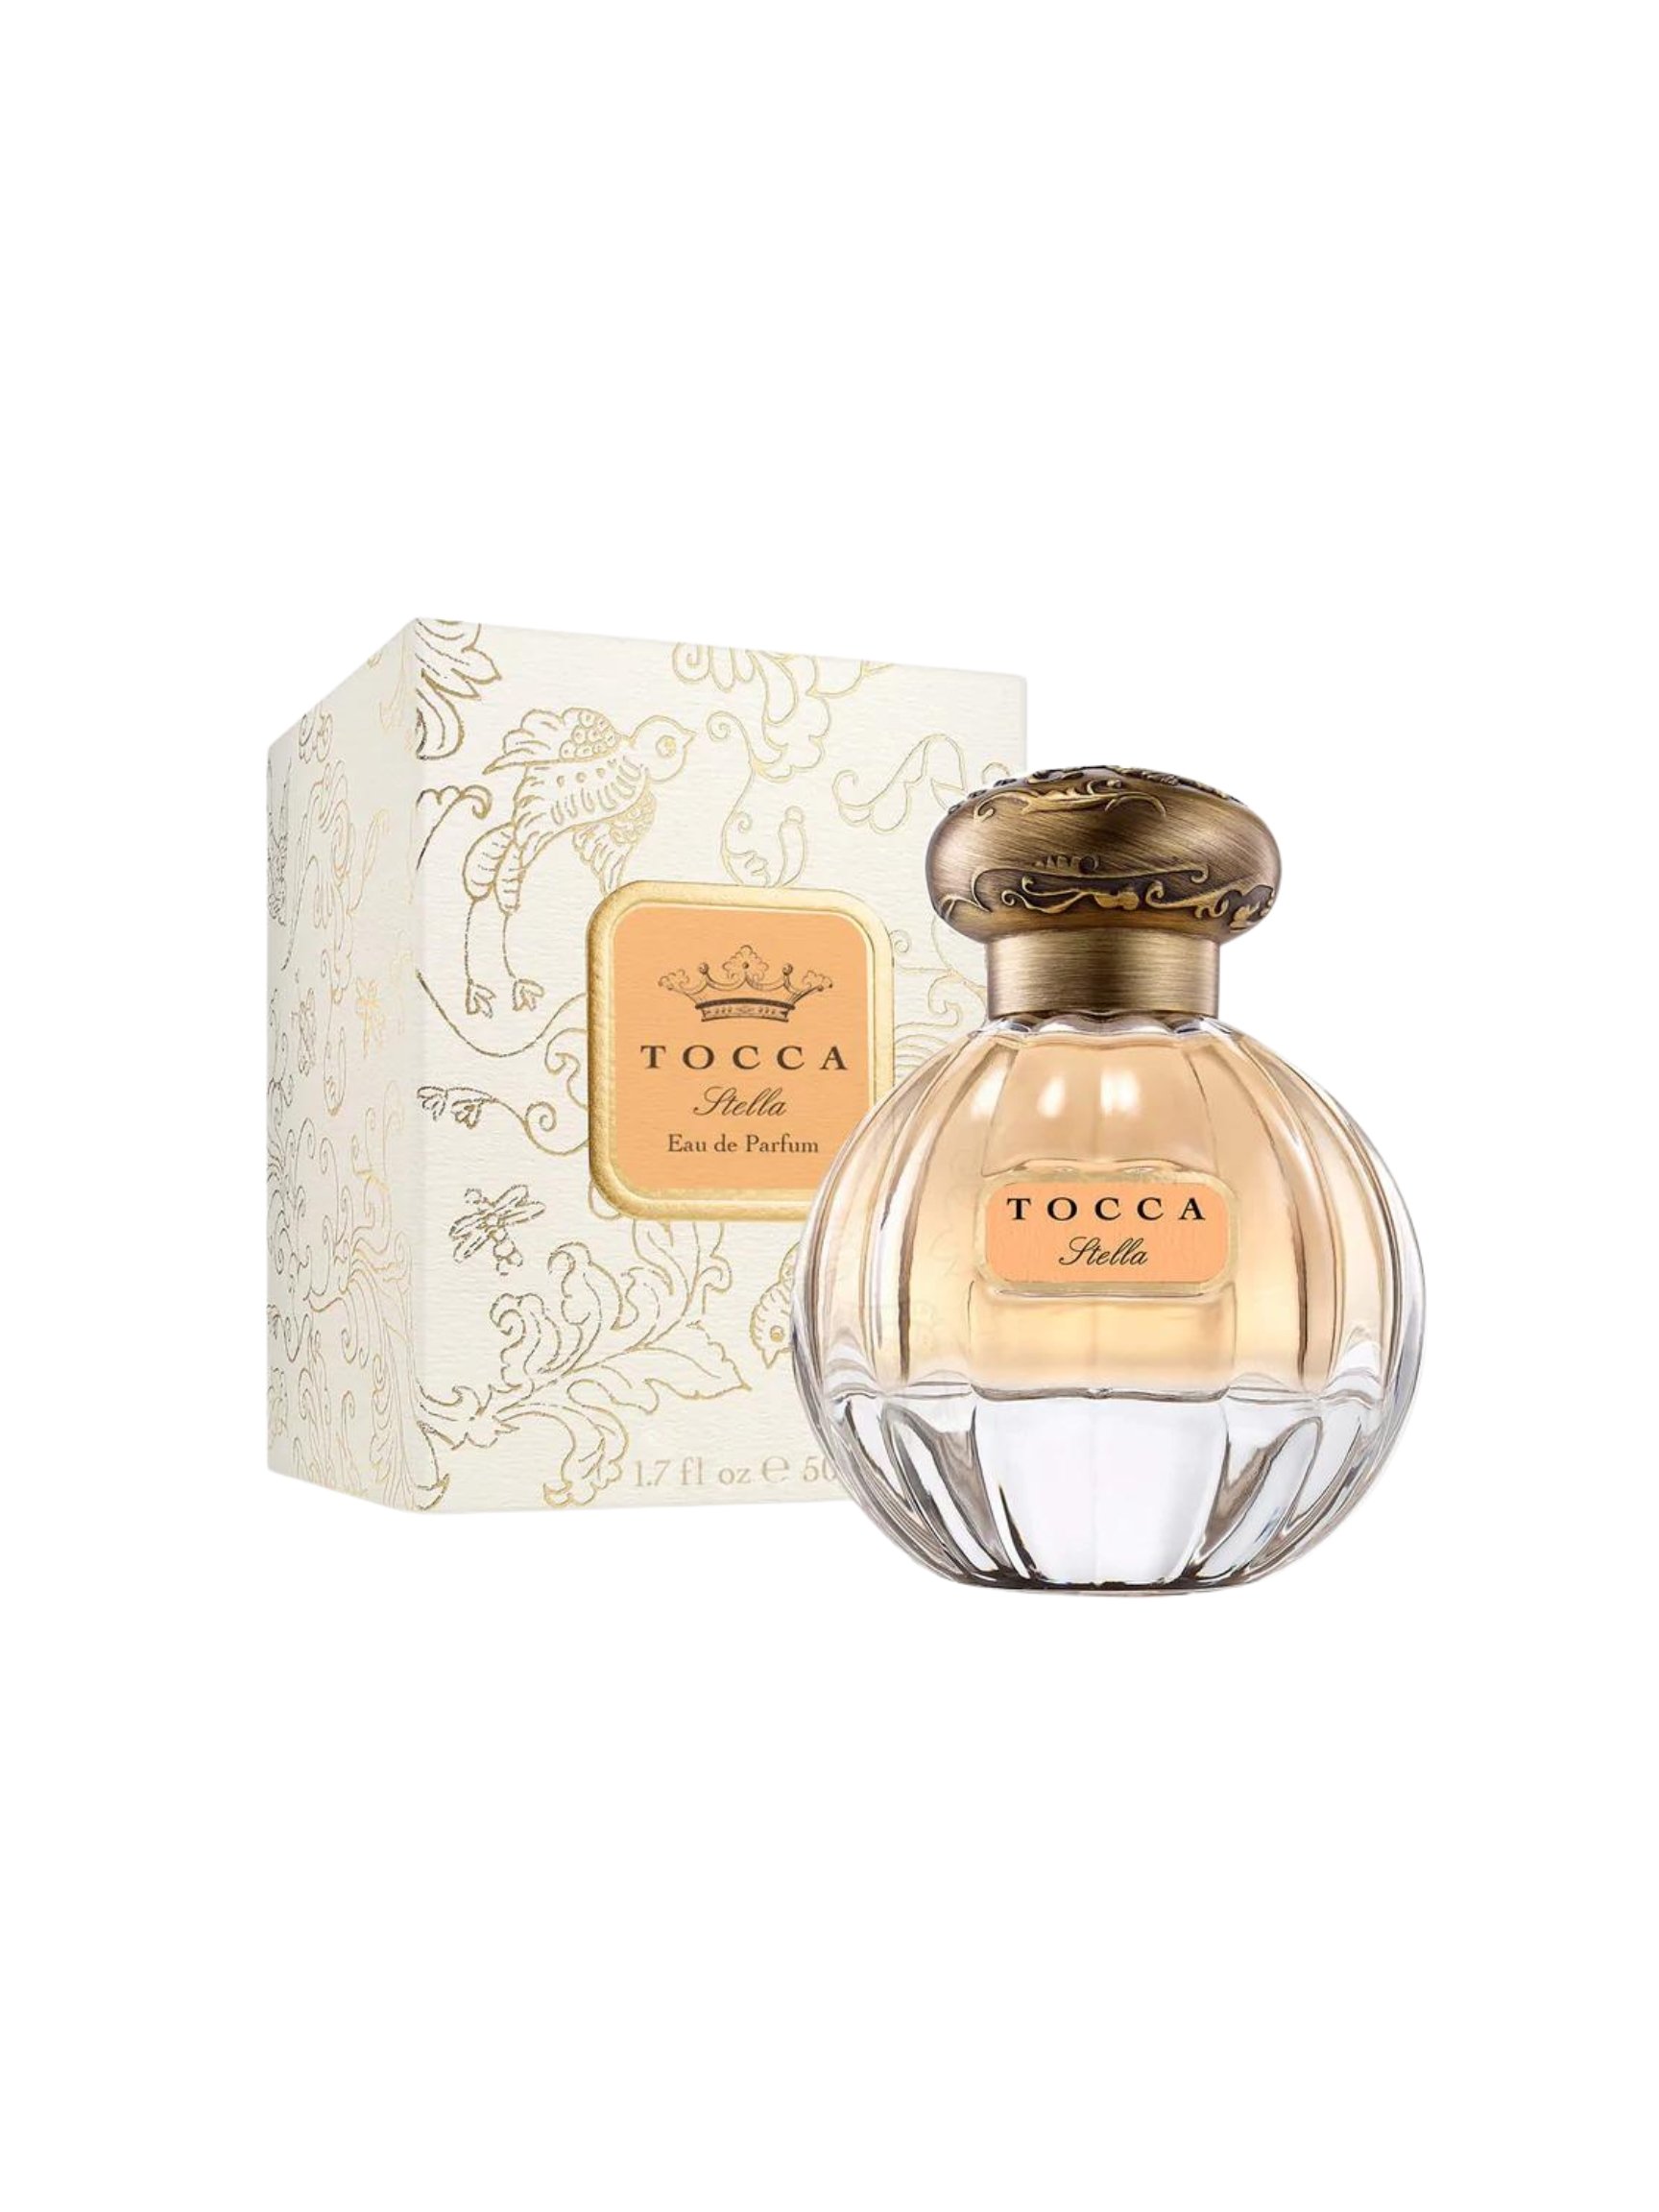 Ivy Cottage Collections — Tocca Eau de Parfum